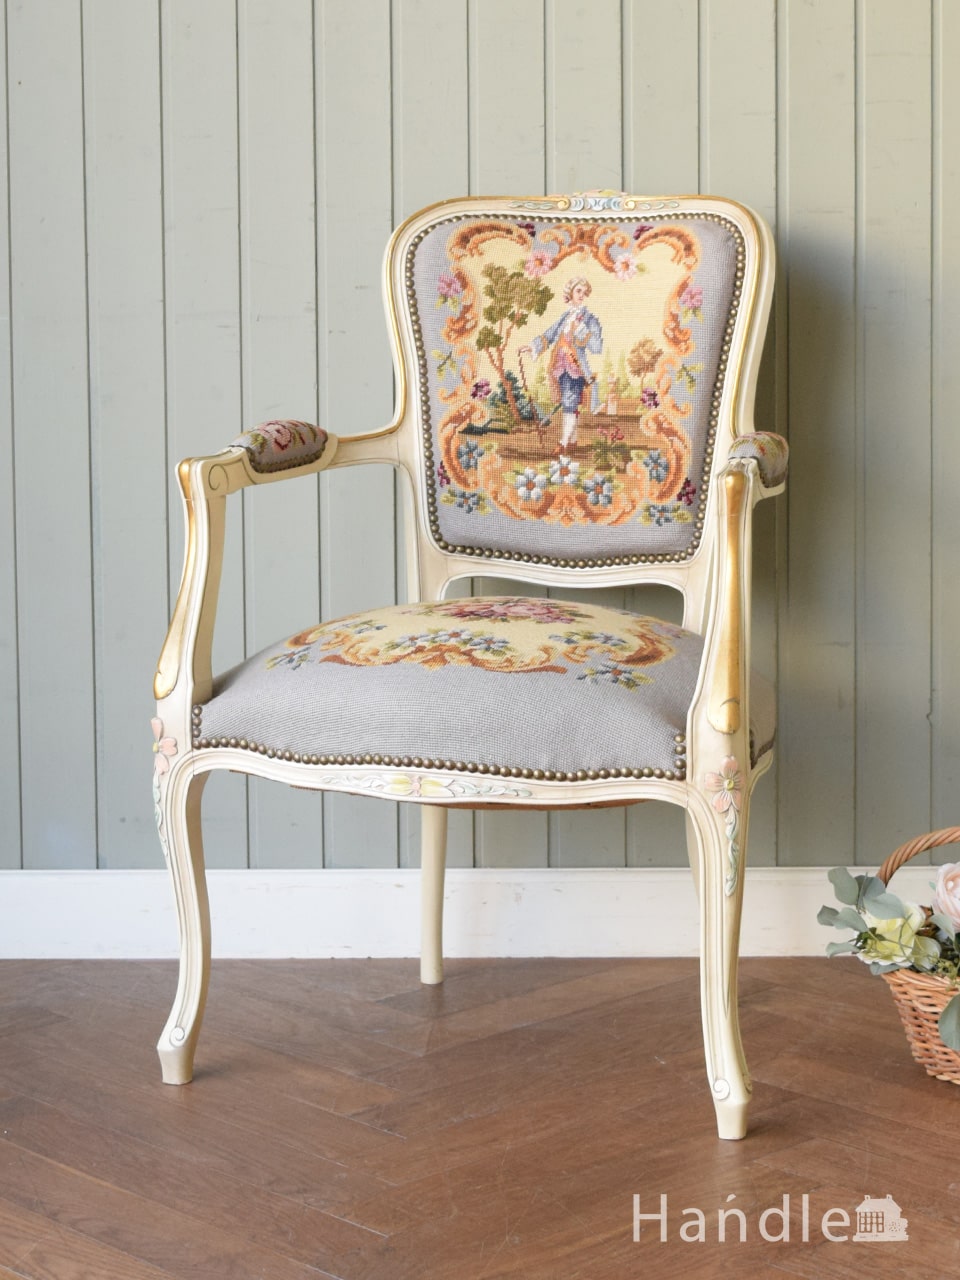 フランスから届いた一人掛けの椅子、王子様の刺繍が美しいプチポワンの